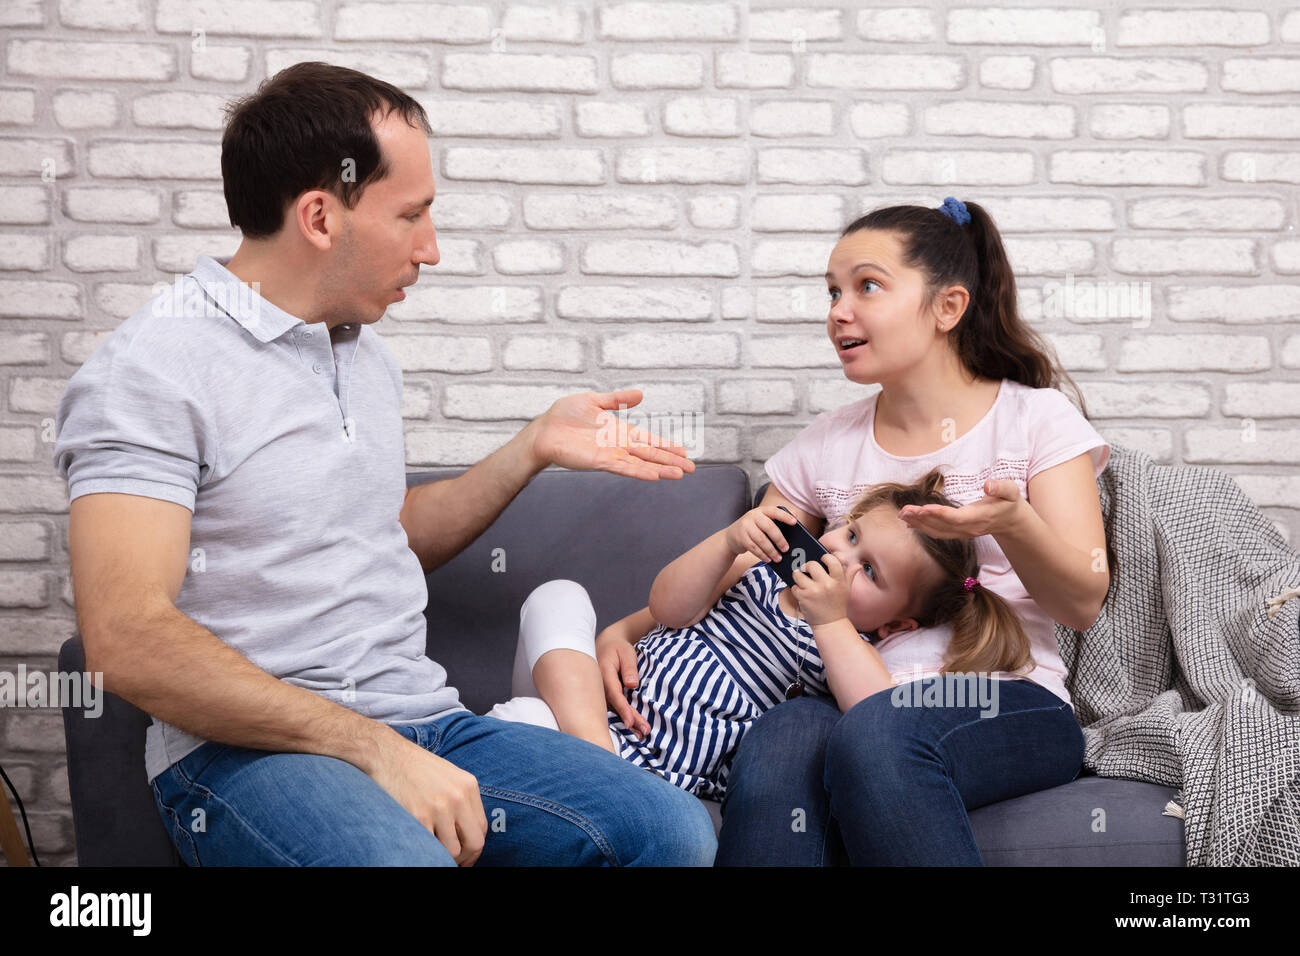 Paar Argumentieren zu Hause, während ihre Tochter nach Mobilephone Sitzen auf einem Sofa Stockfoto